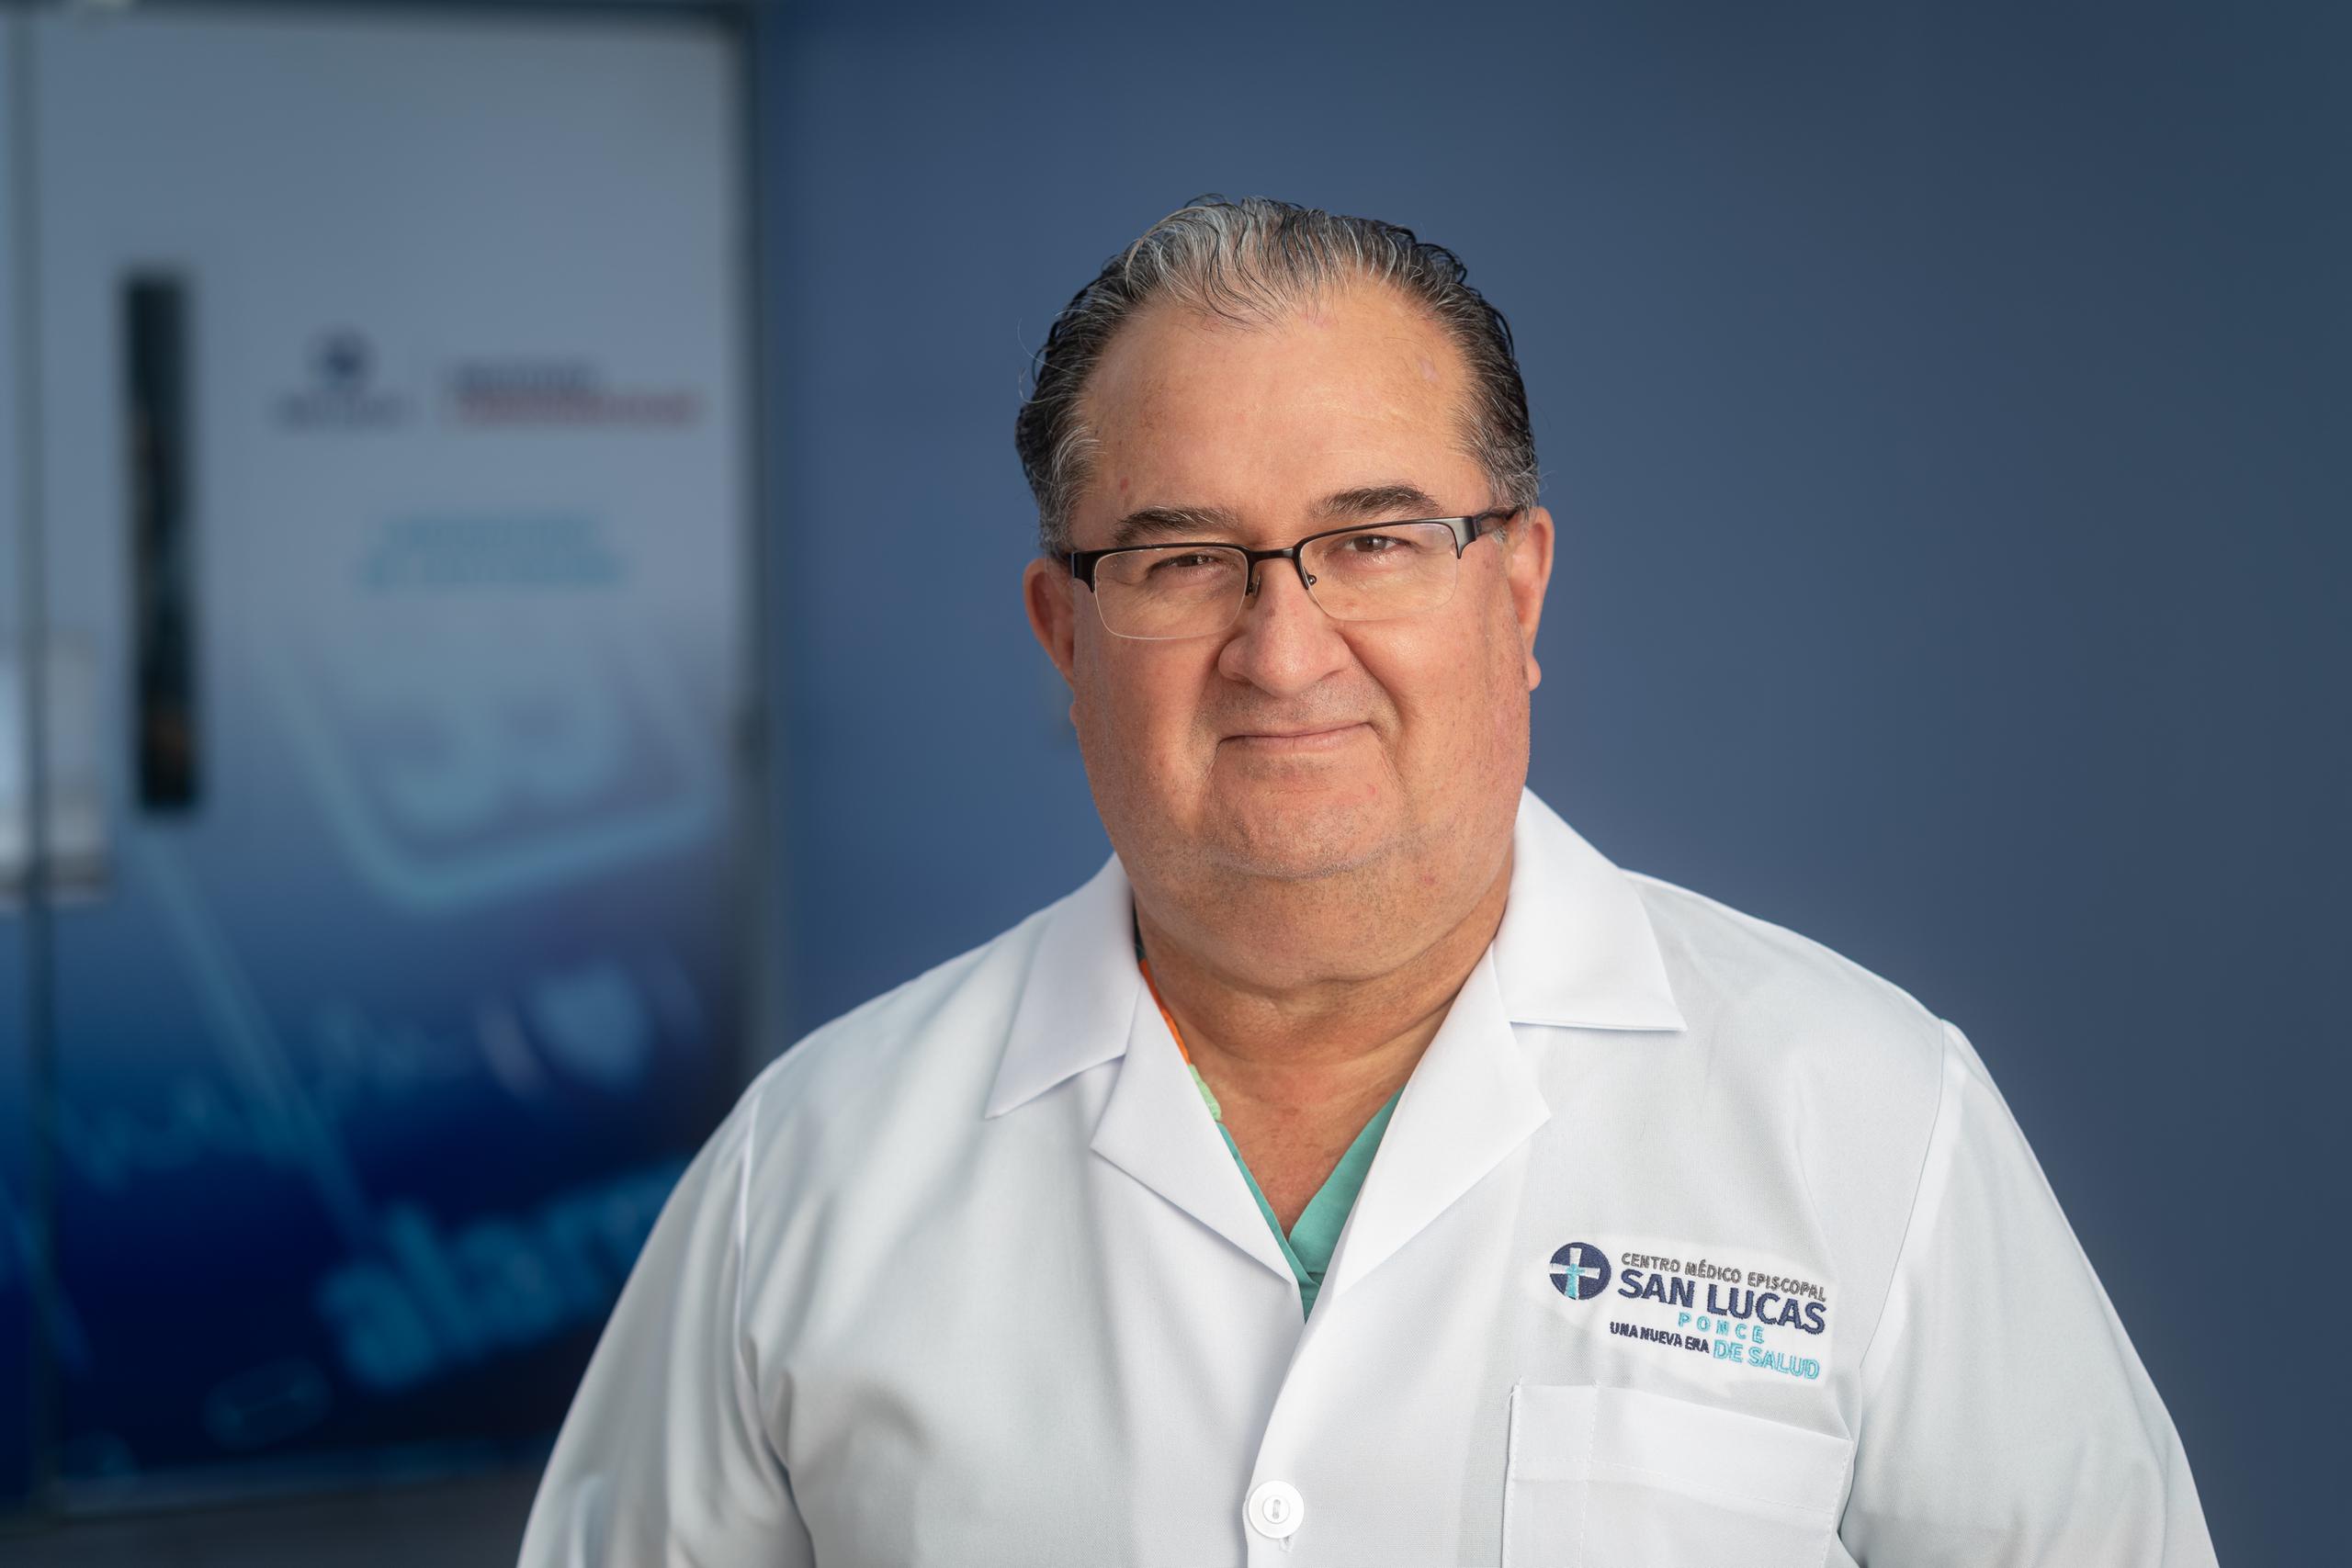 El doctor Edgardo Bermúdez Moreno, cardiólogo intervencional y director del Instituto Cardiovascular San Lucas.